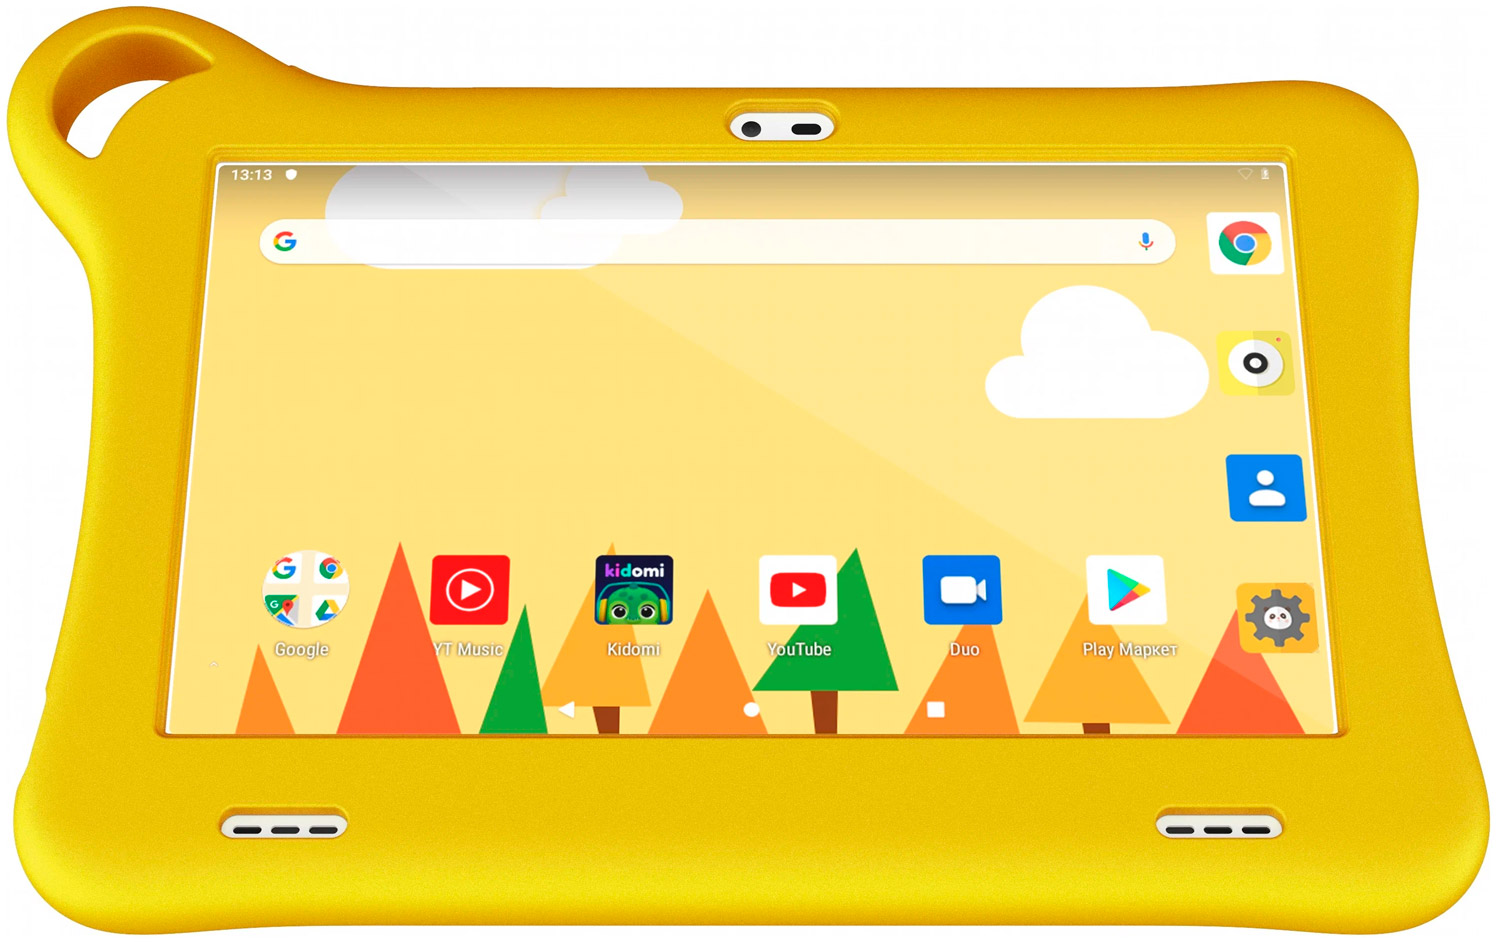 Планшет Alcatel Tkee Mini 2 YELLOW+ORANGЕ/желтый+оранжевый детский планшет alcatel tkee mini 2 1 32gb wifi 9317g 9317g 2galru2 мятный голубой